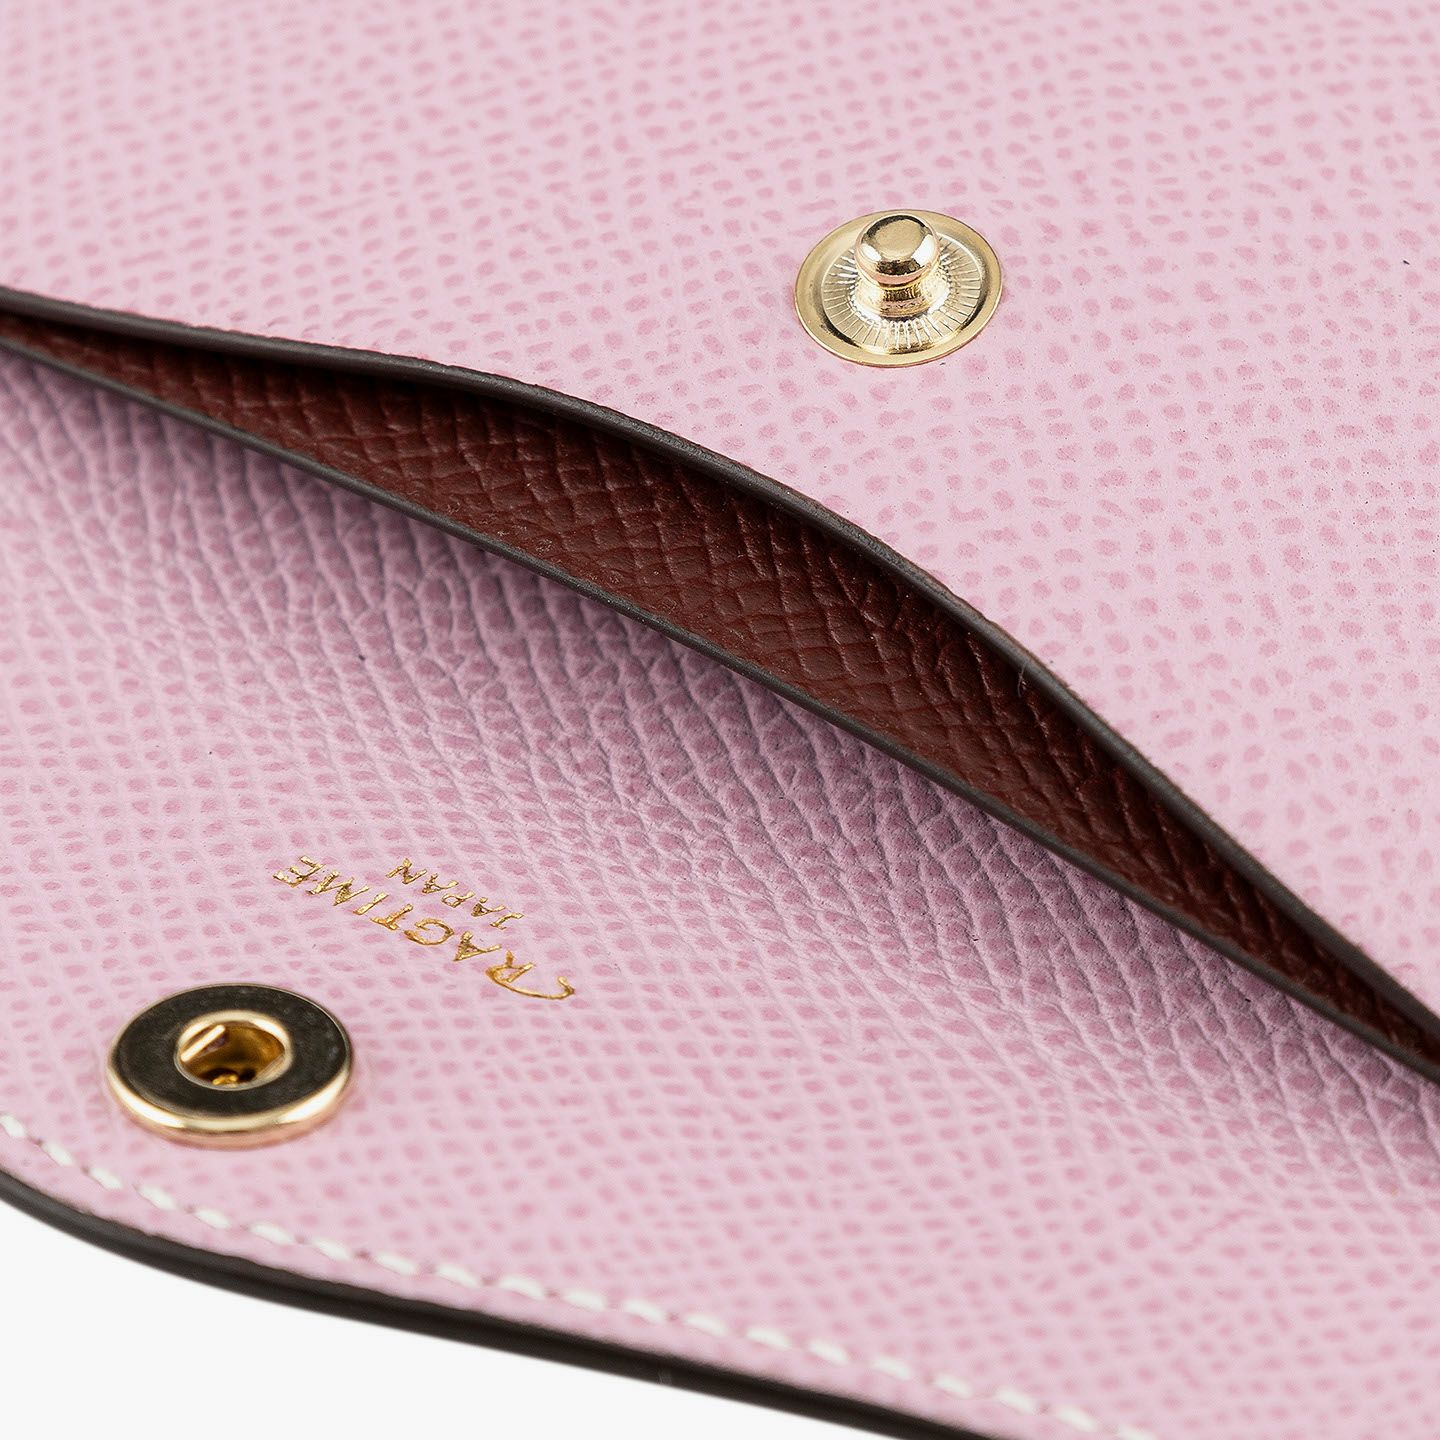 外装（ダービー）：Mauve Pink、内装装飾（ダービー）：Rouge Brique、糸色：White 、金具 & ロゴ箔押し：Gold